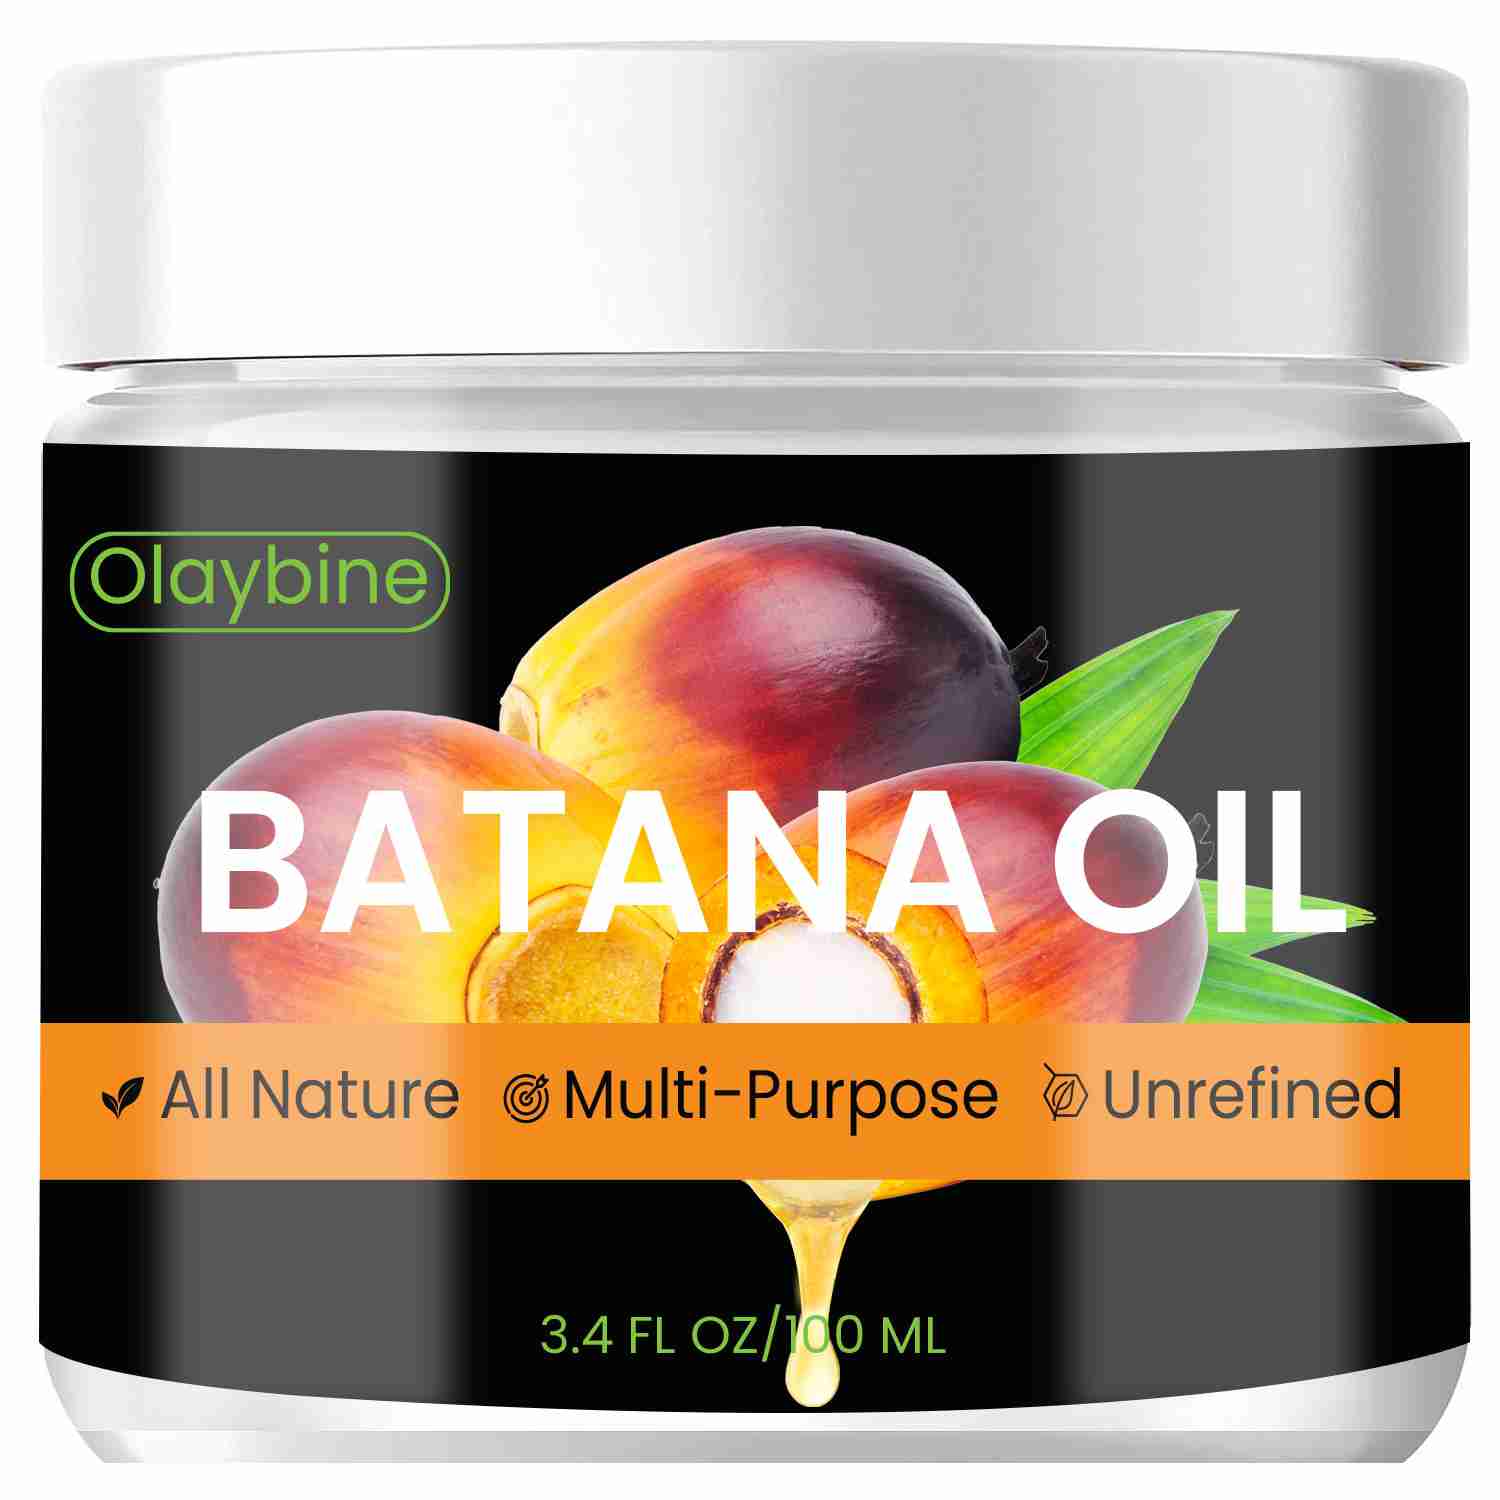 batana-oil-for-hair-growth-by-olaybine with cash back rebate